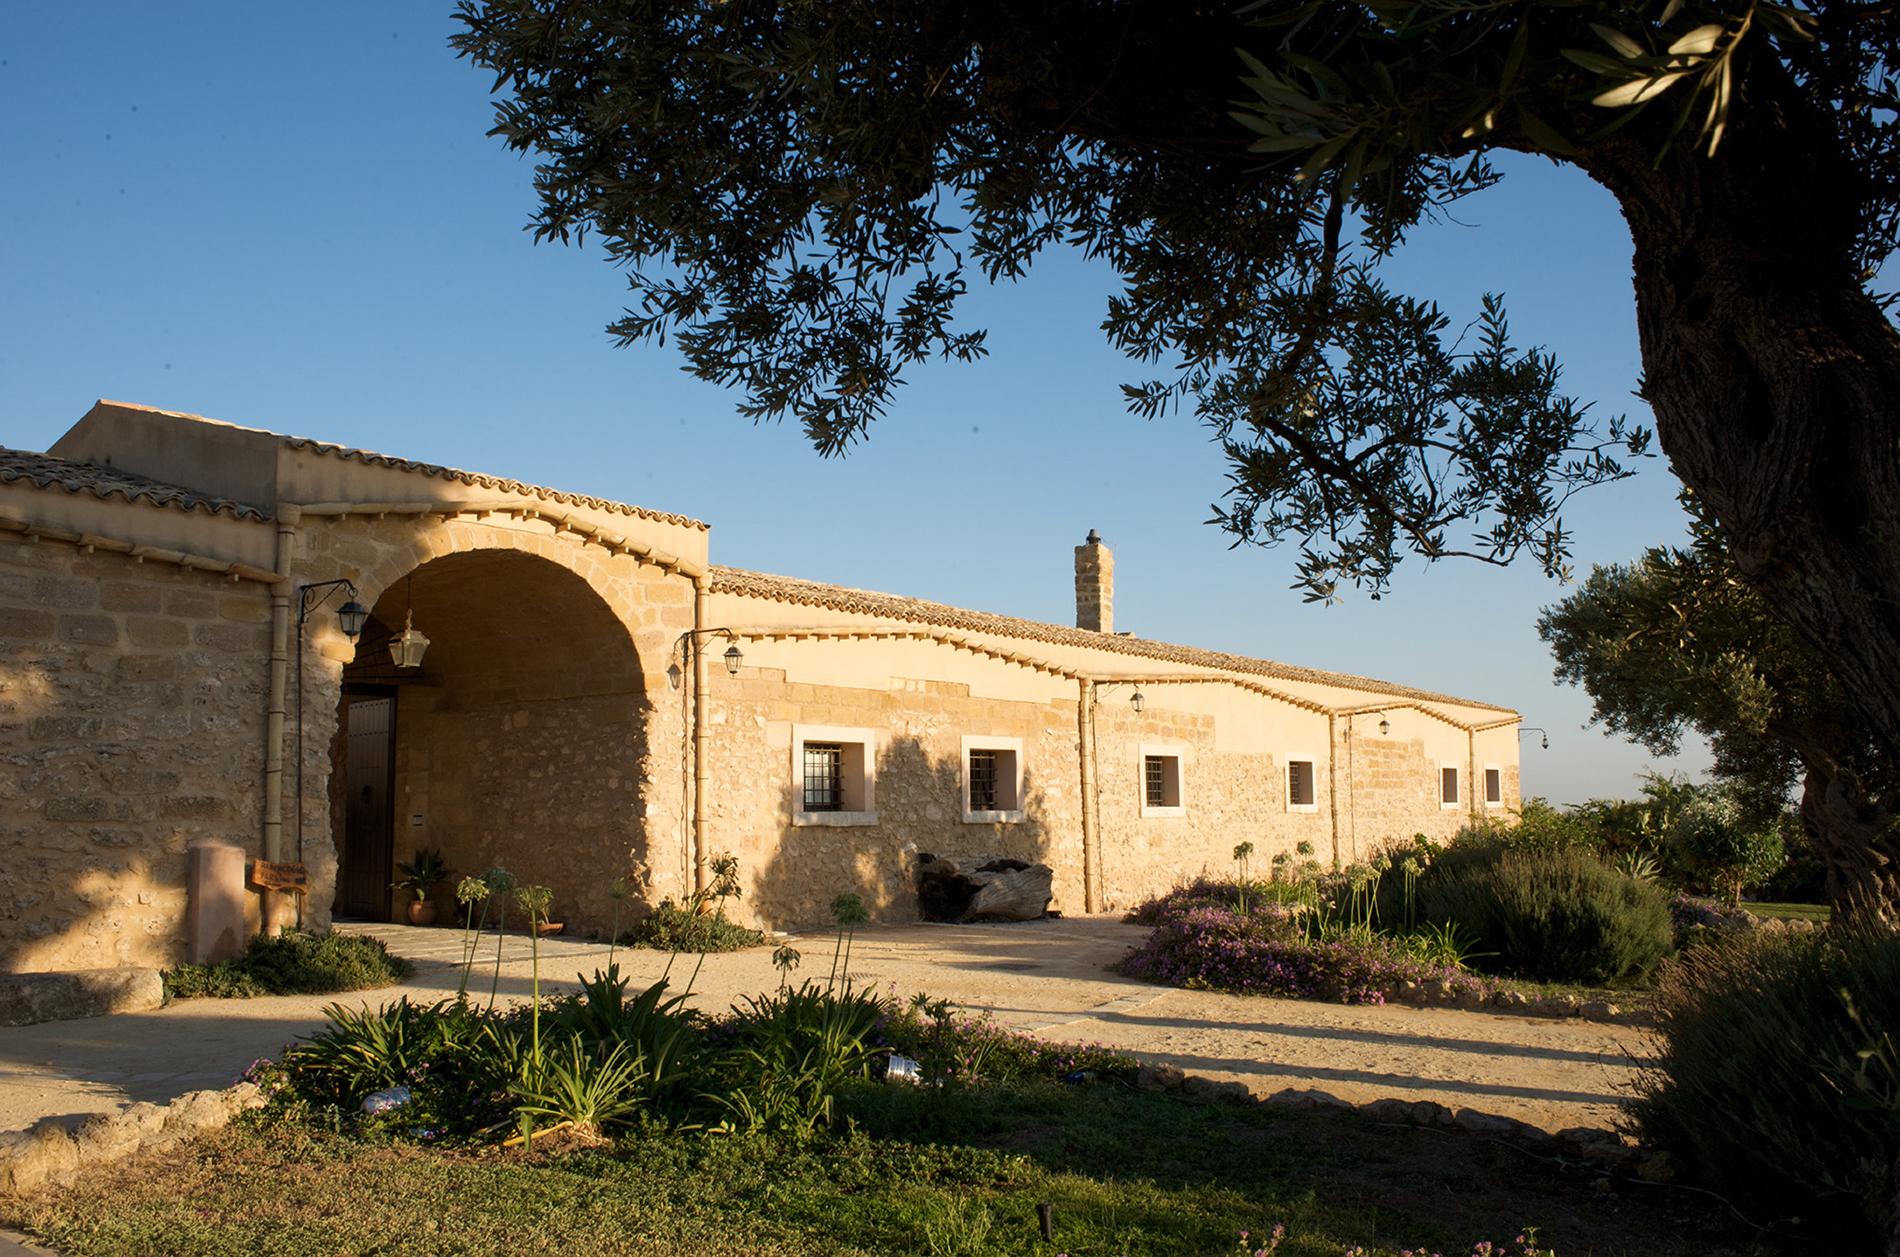 Magnifique domaine viticole sicilien - 8